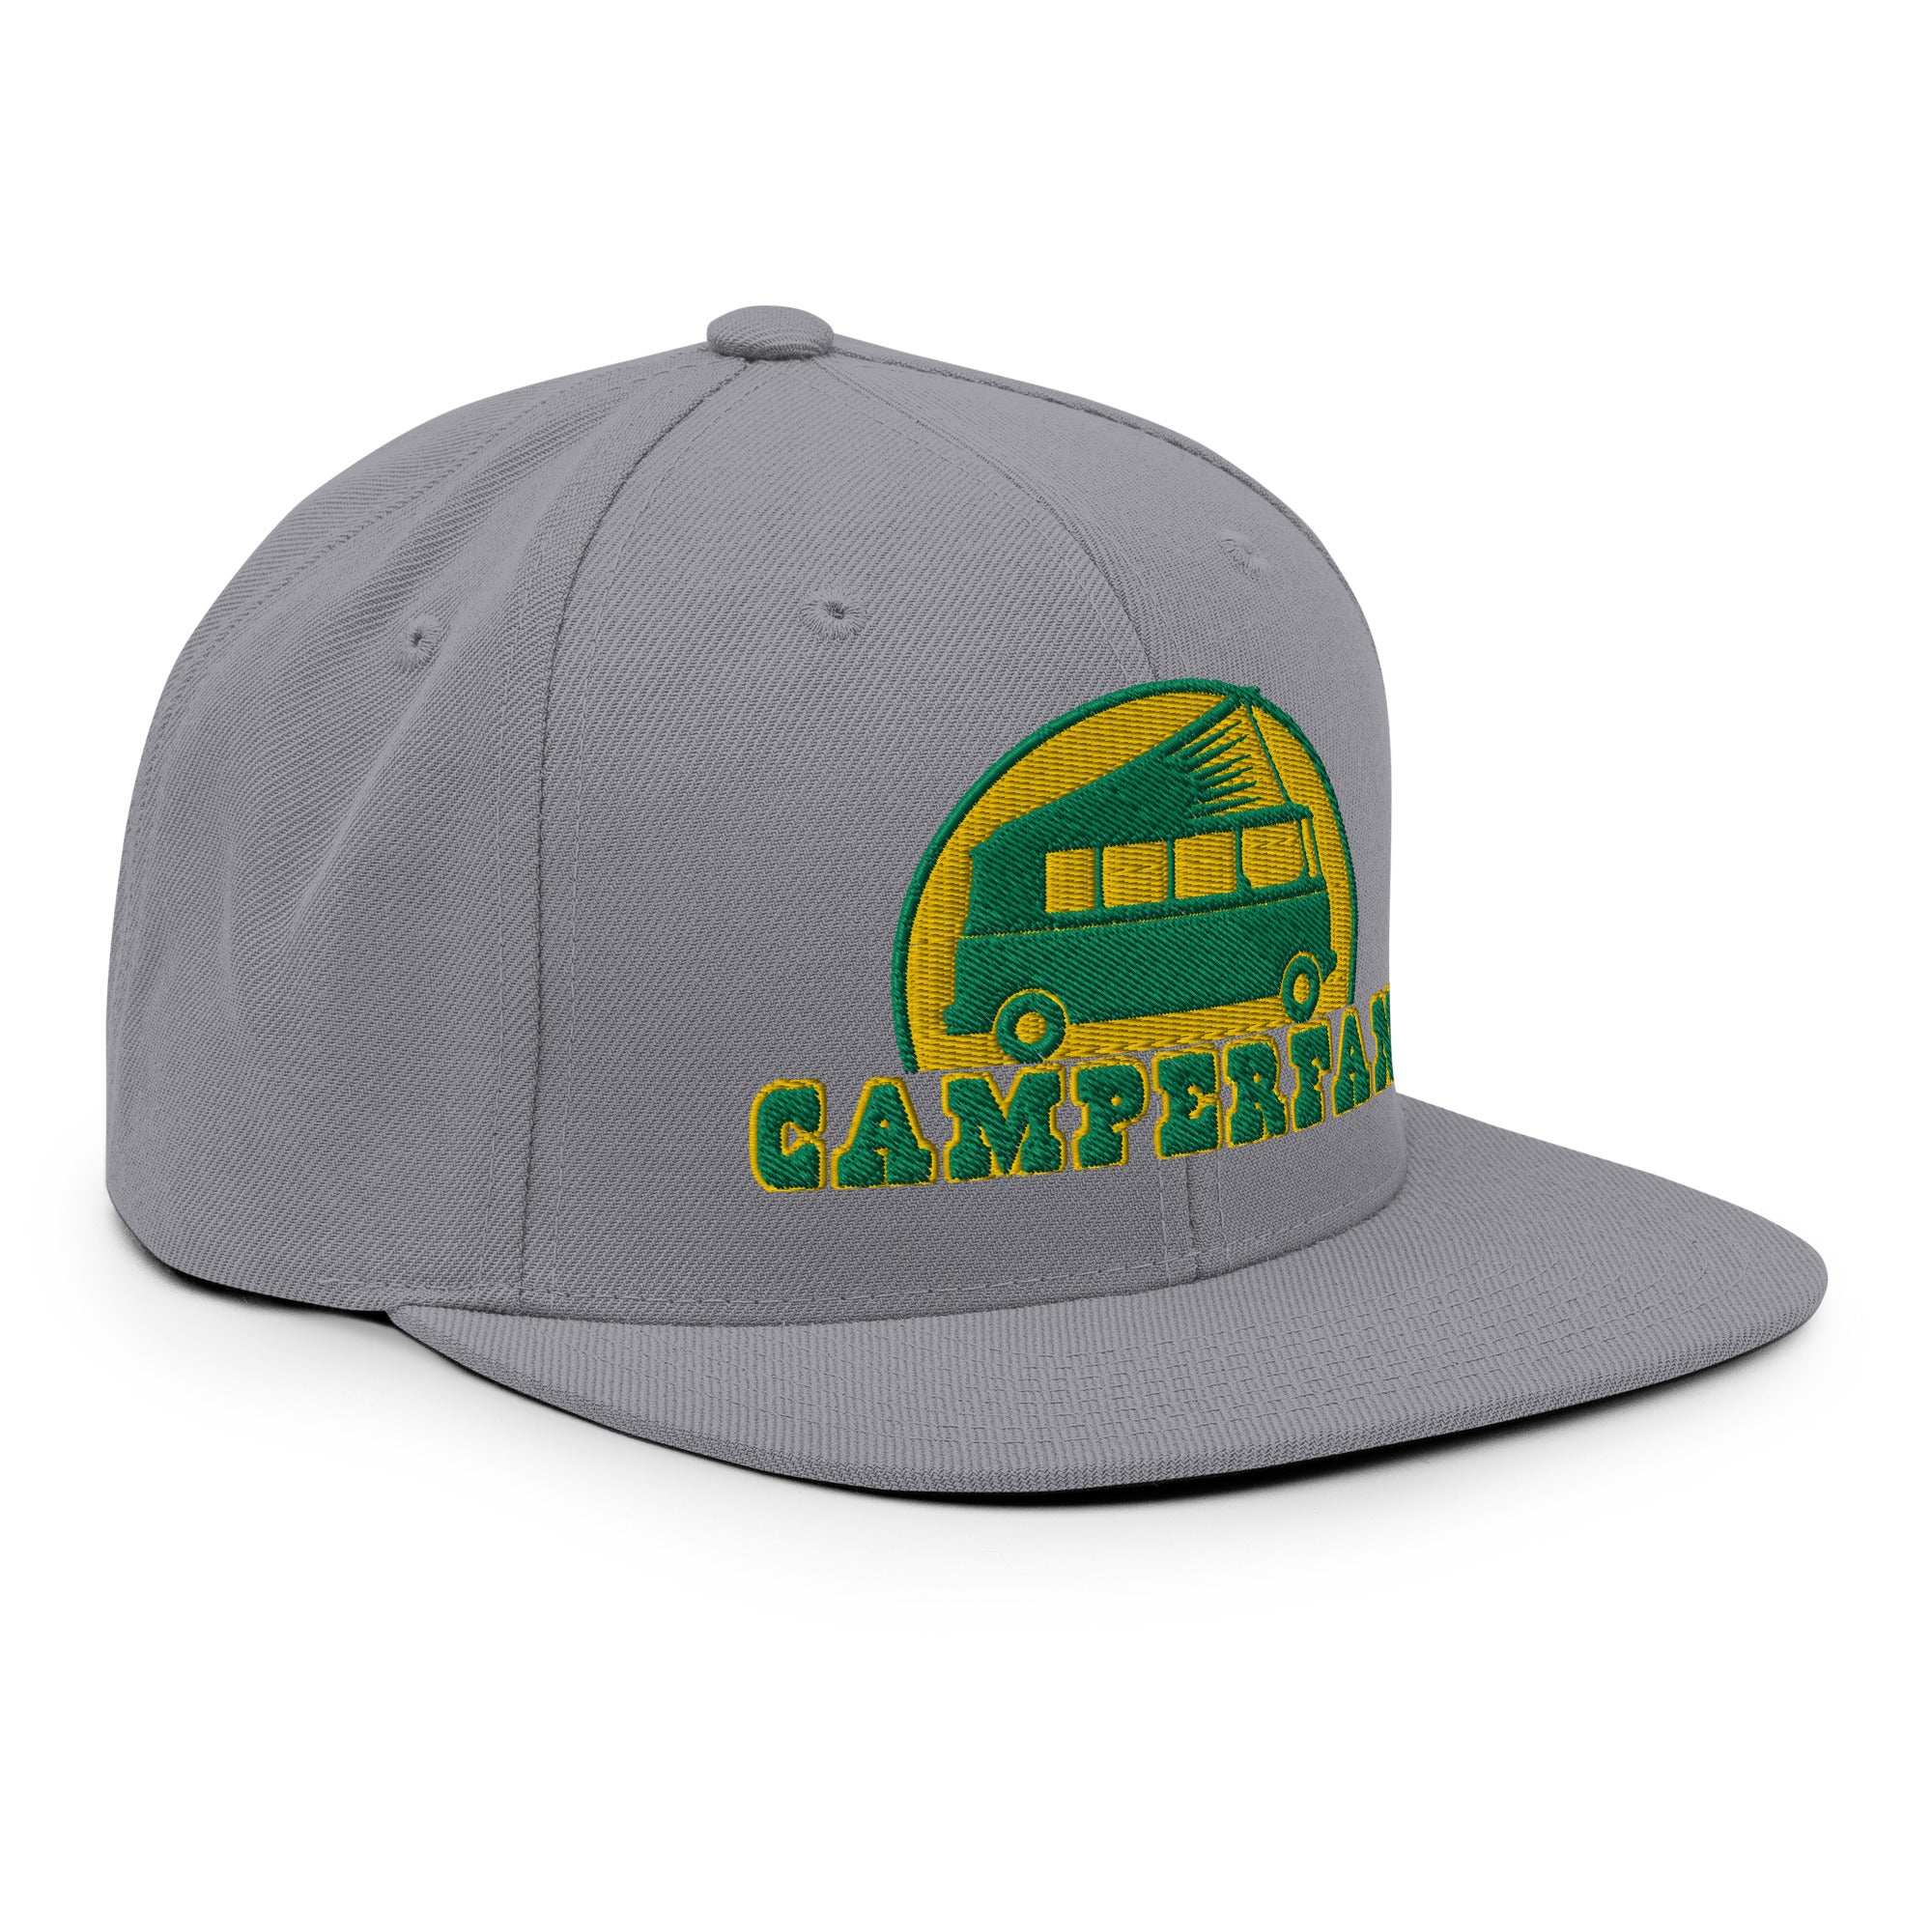 Casquette Snapback Wool Blend Camperfan green/yellow